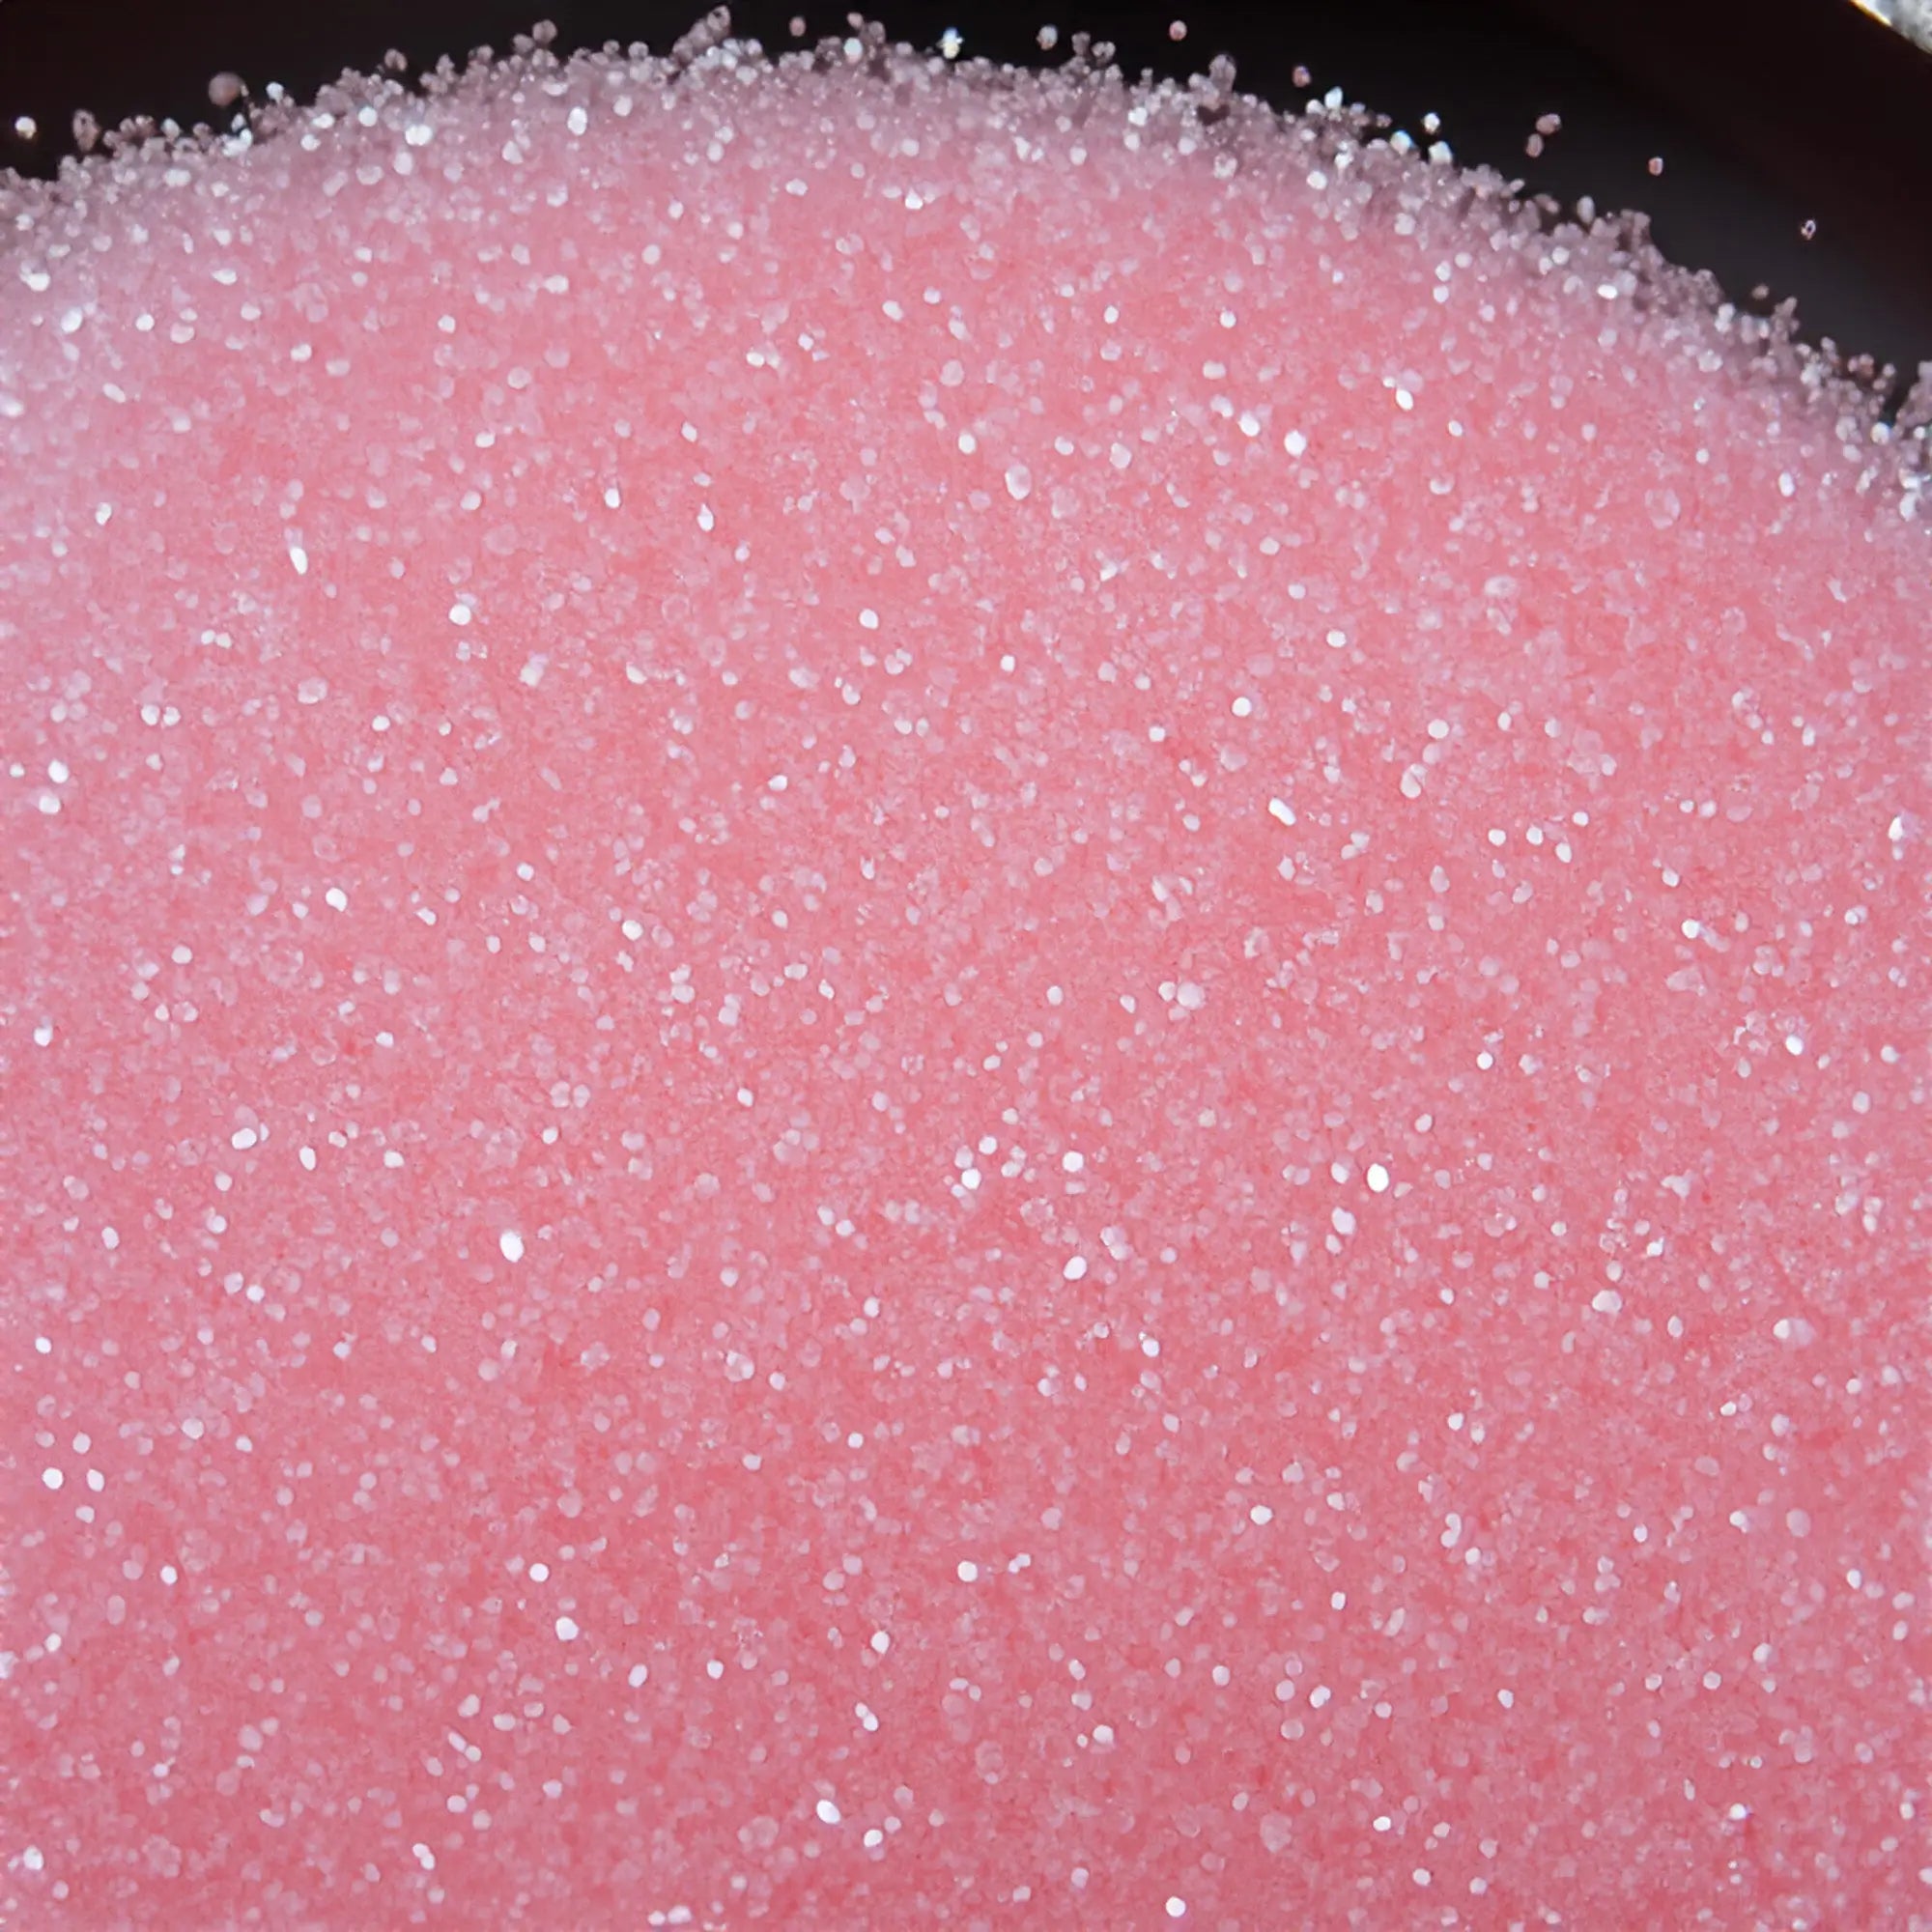 Pink Sugar Type Fragrance - FragranceBuddy